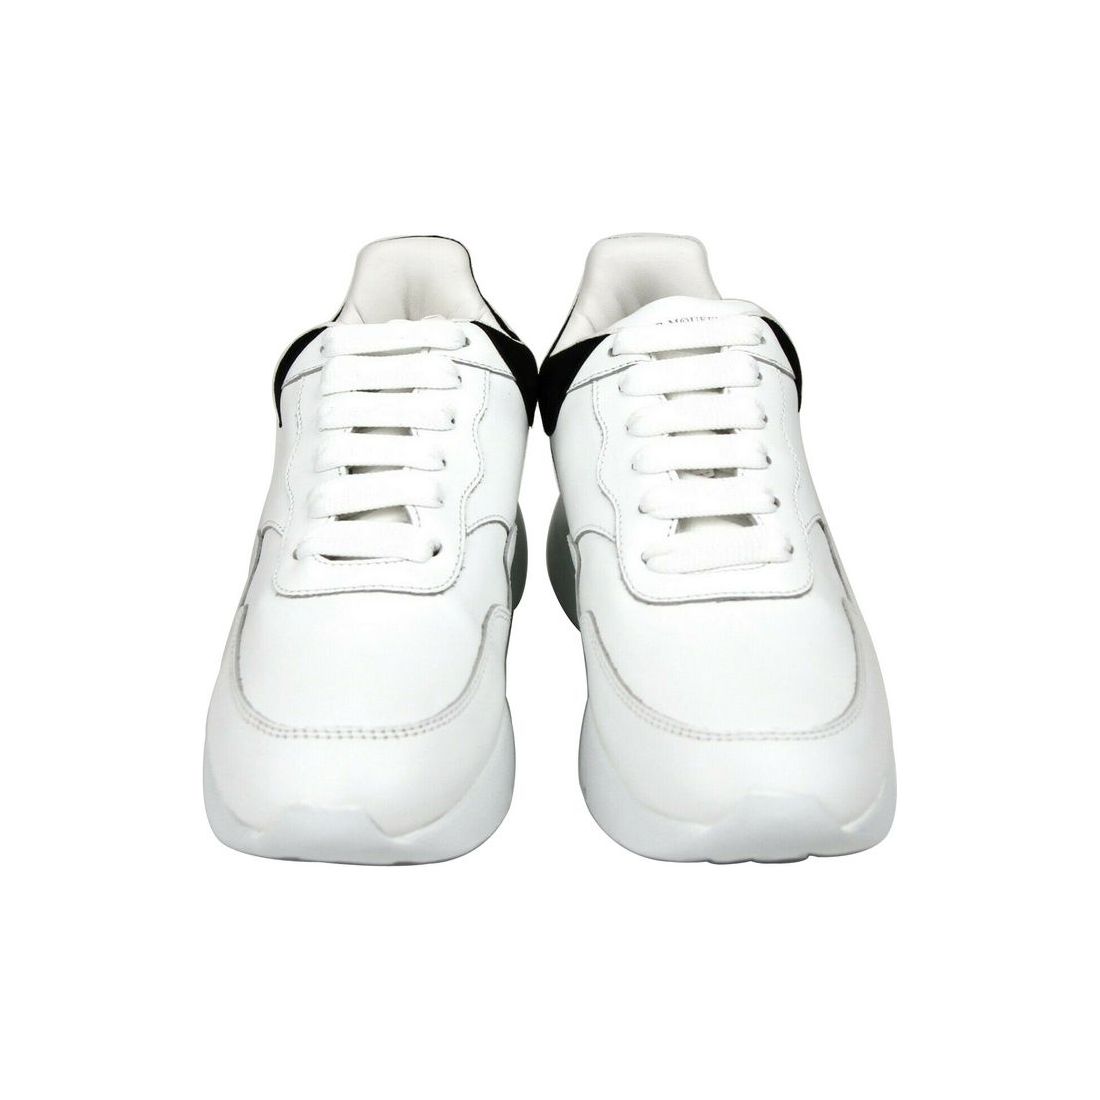 Alexander McQueen Alexander McQueen Women White Leather Suede Sneaker alexander-mcqueen-women-white-leather-suede-sneaker